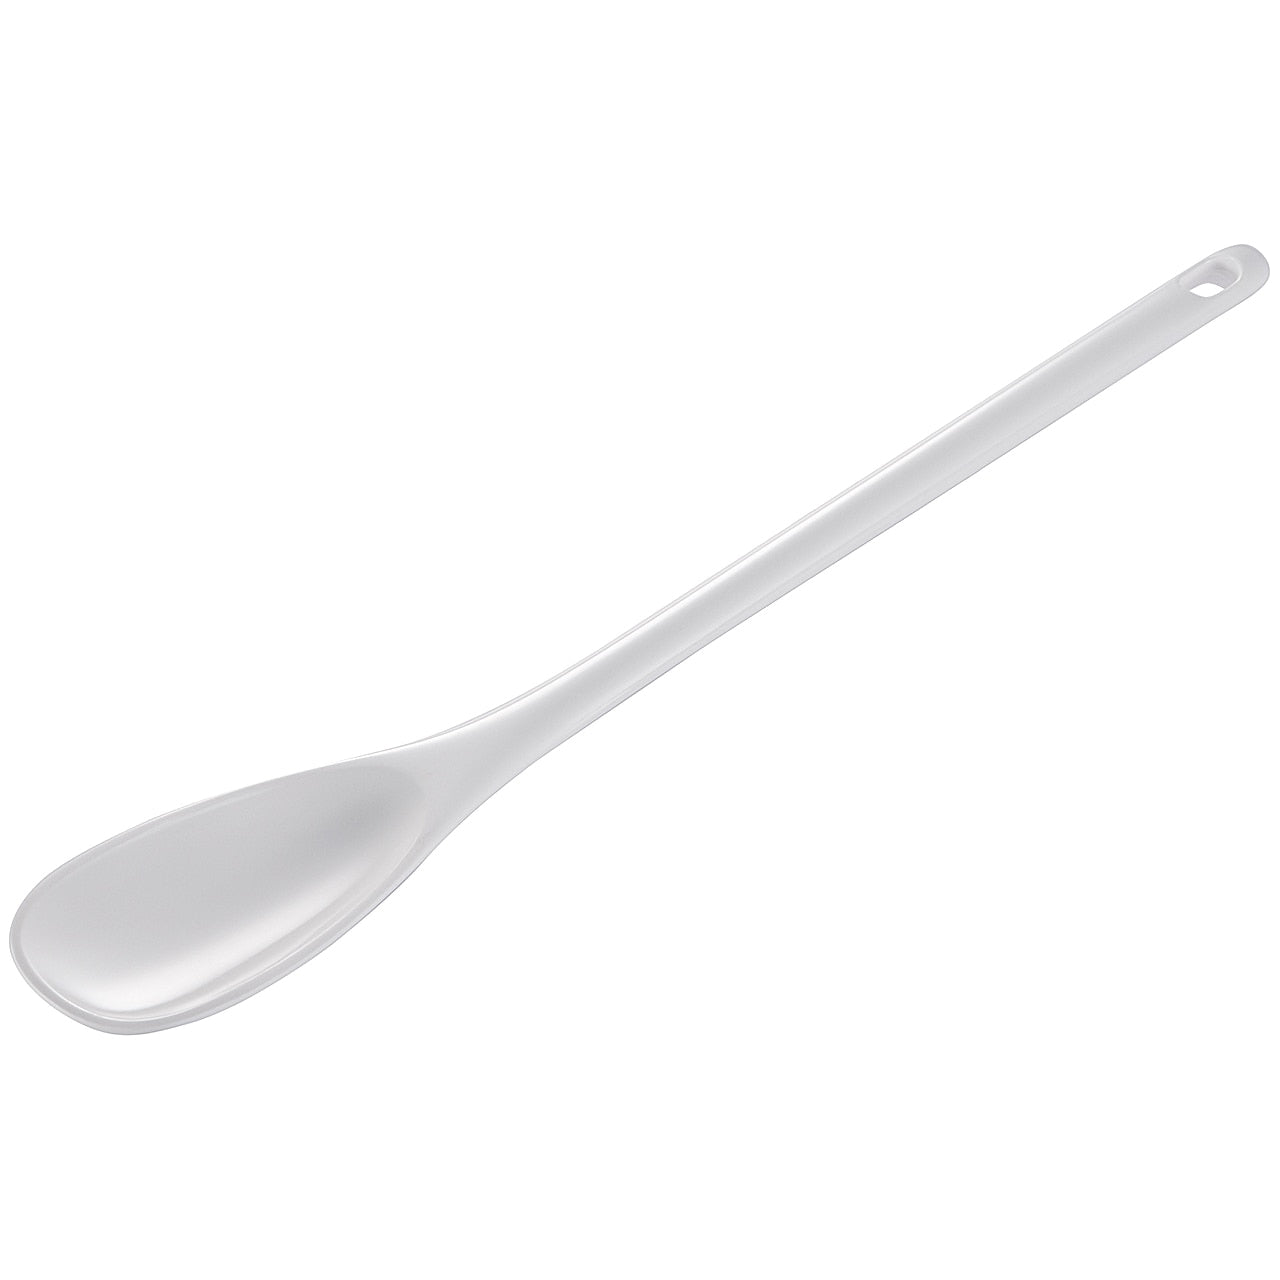 white melamine mixing spoon on a white background